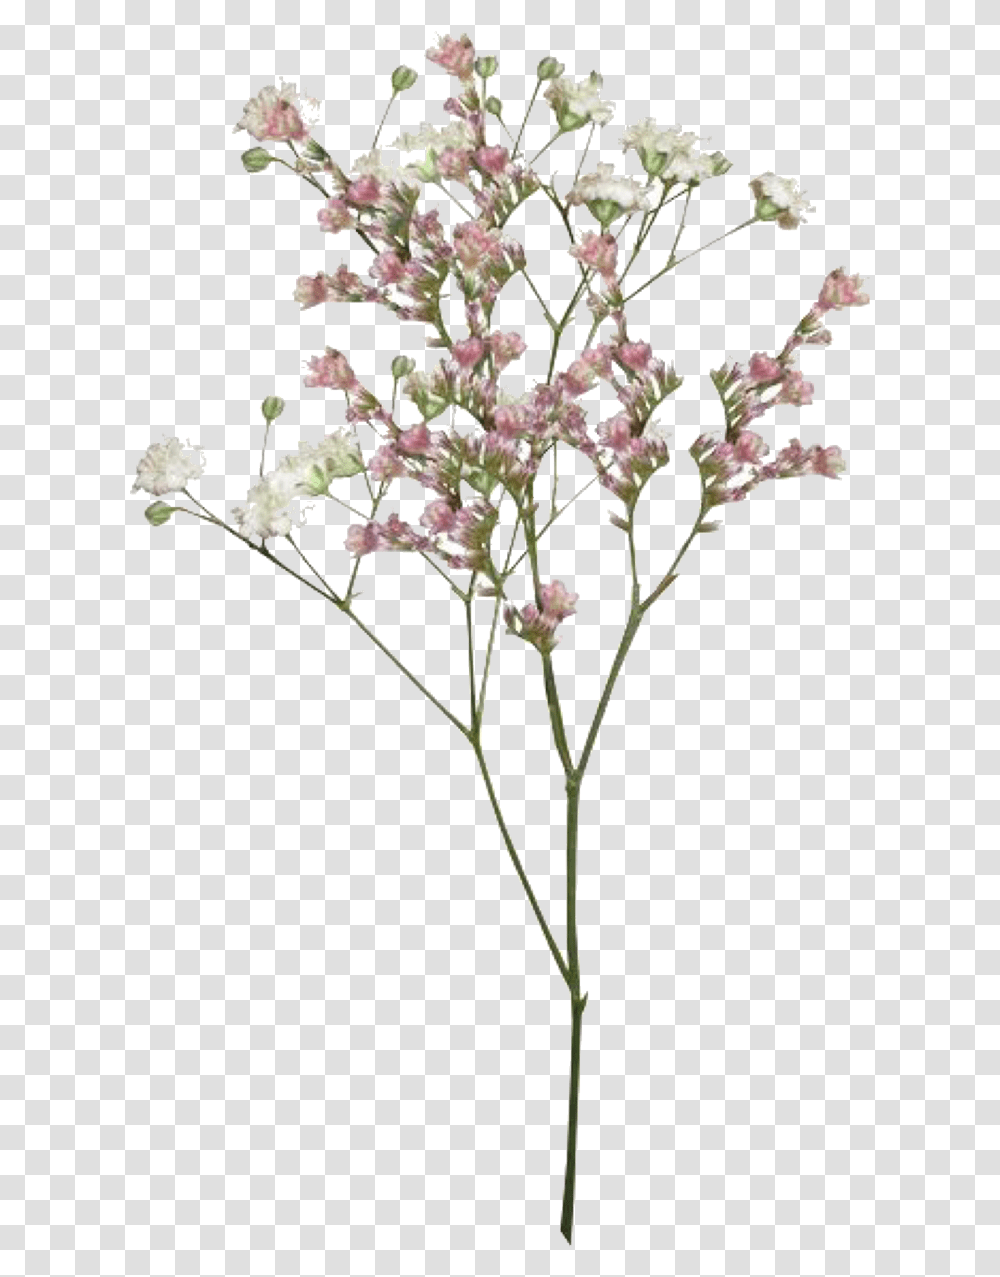 Pngs Like Or Reblog If Used, Plant, Flower, Blossom, Flower Arrangement Transparent Png